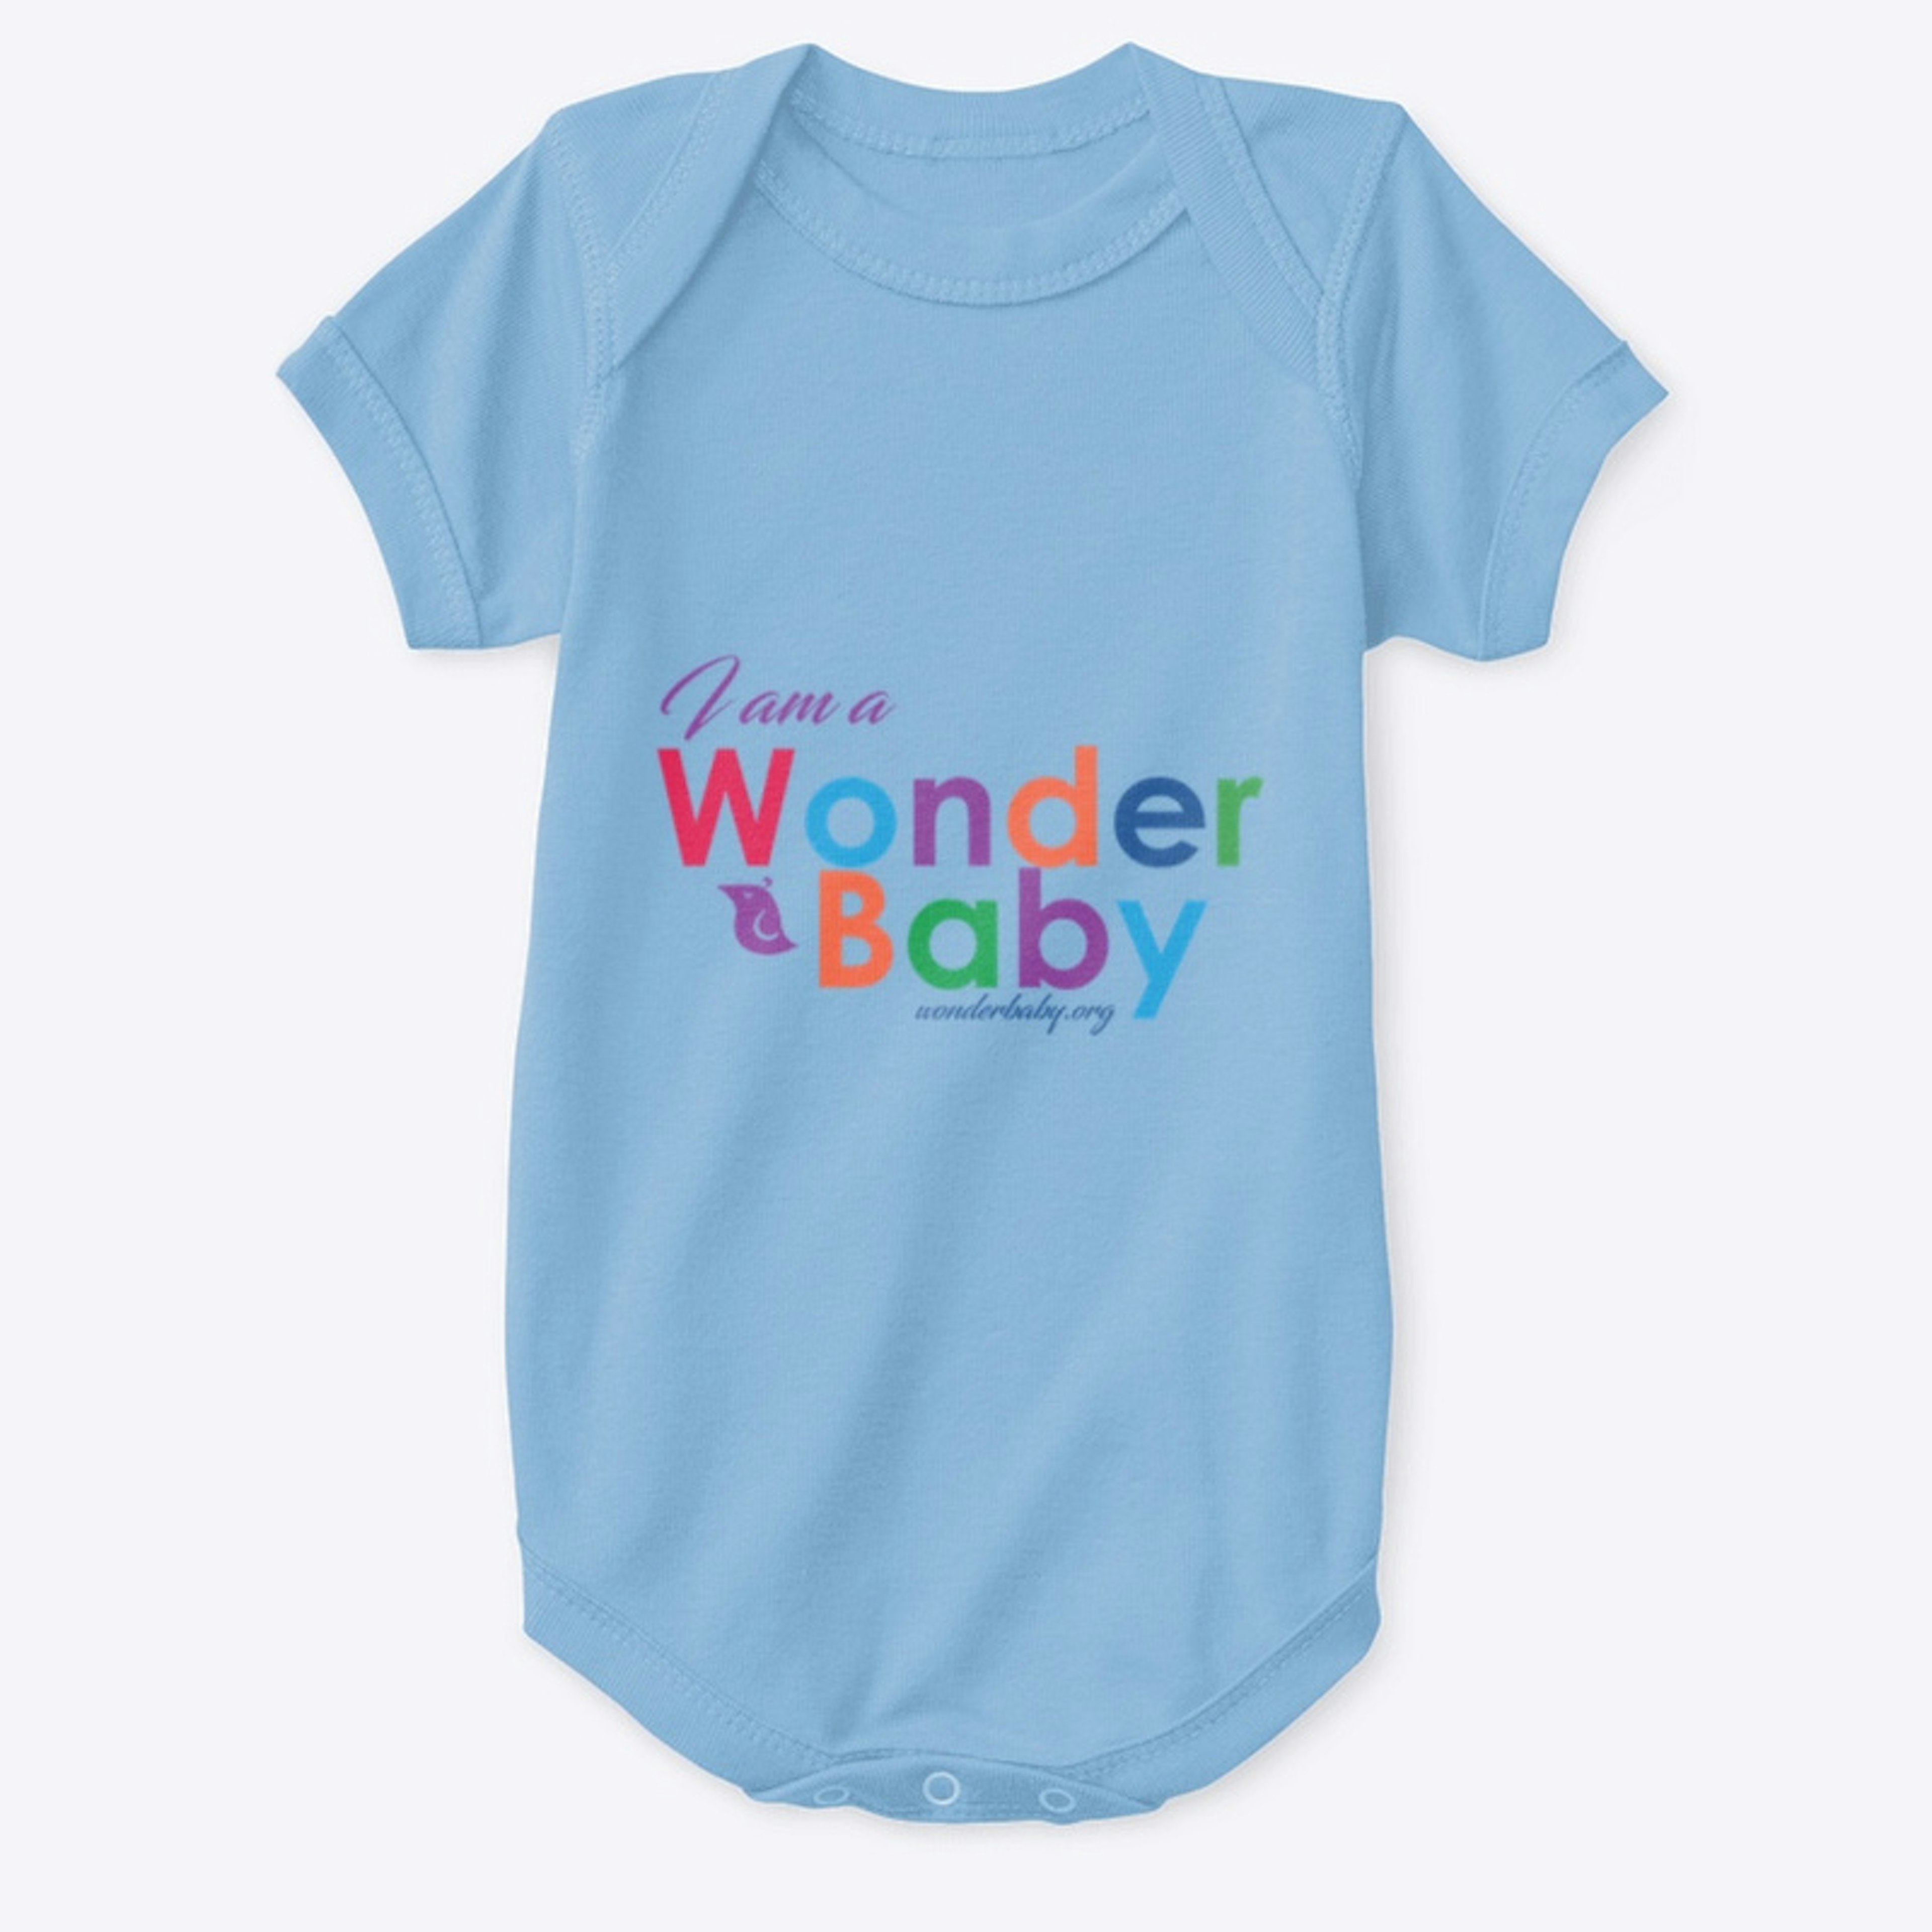 I am a WonderBaby T-Shirt